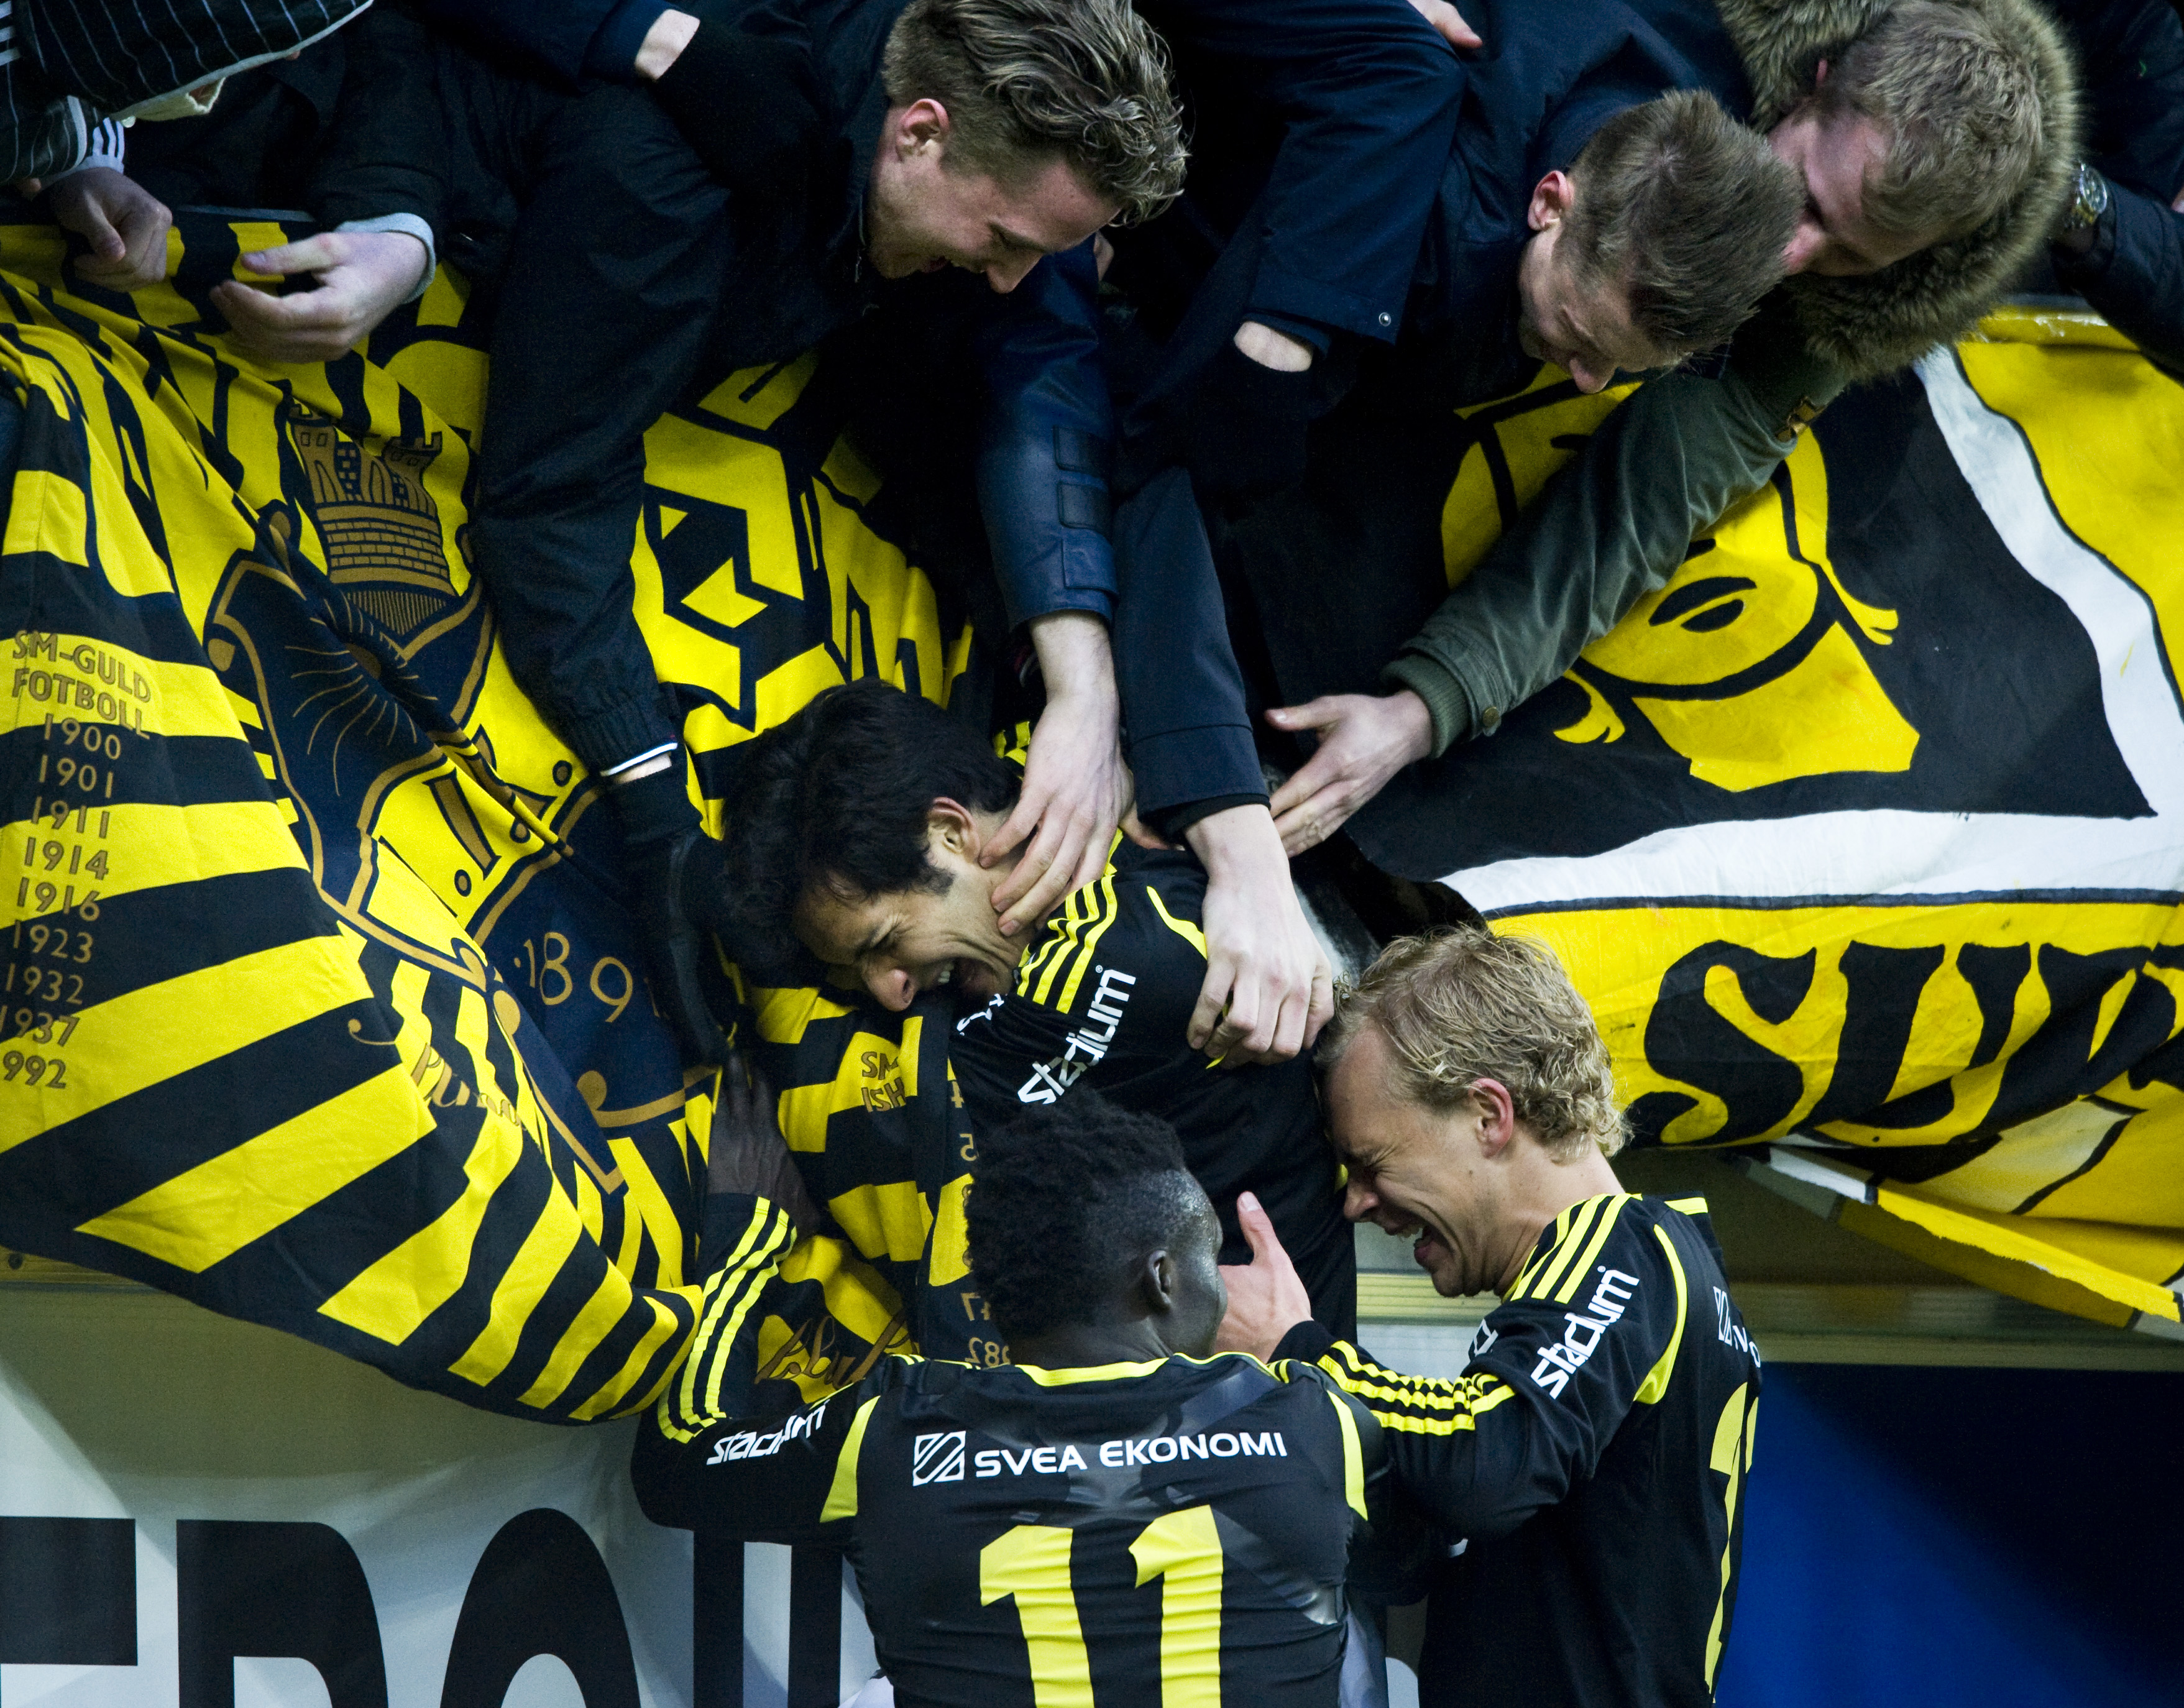 Hyllade efteråt AIK:s tillresta supportrar. 